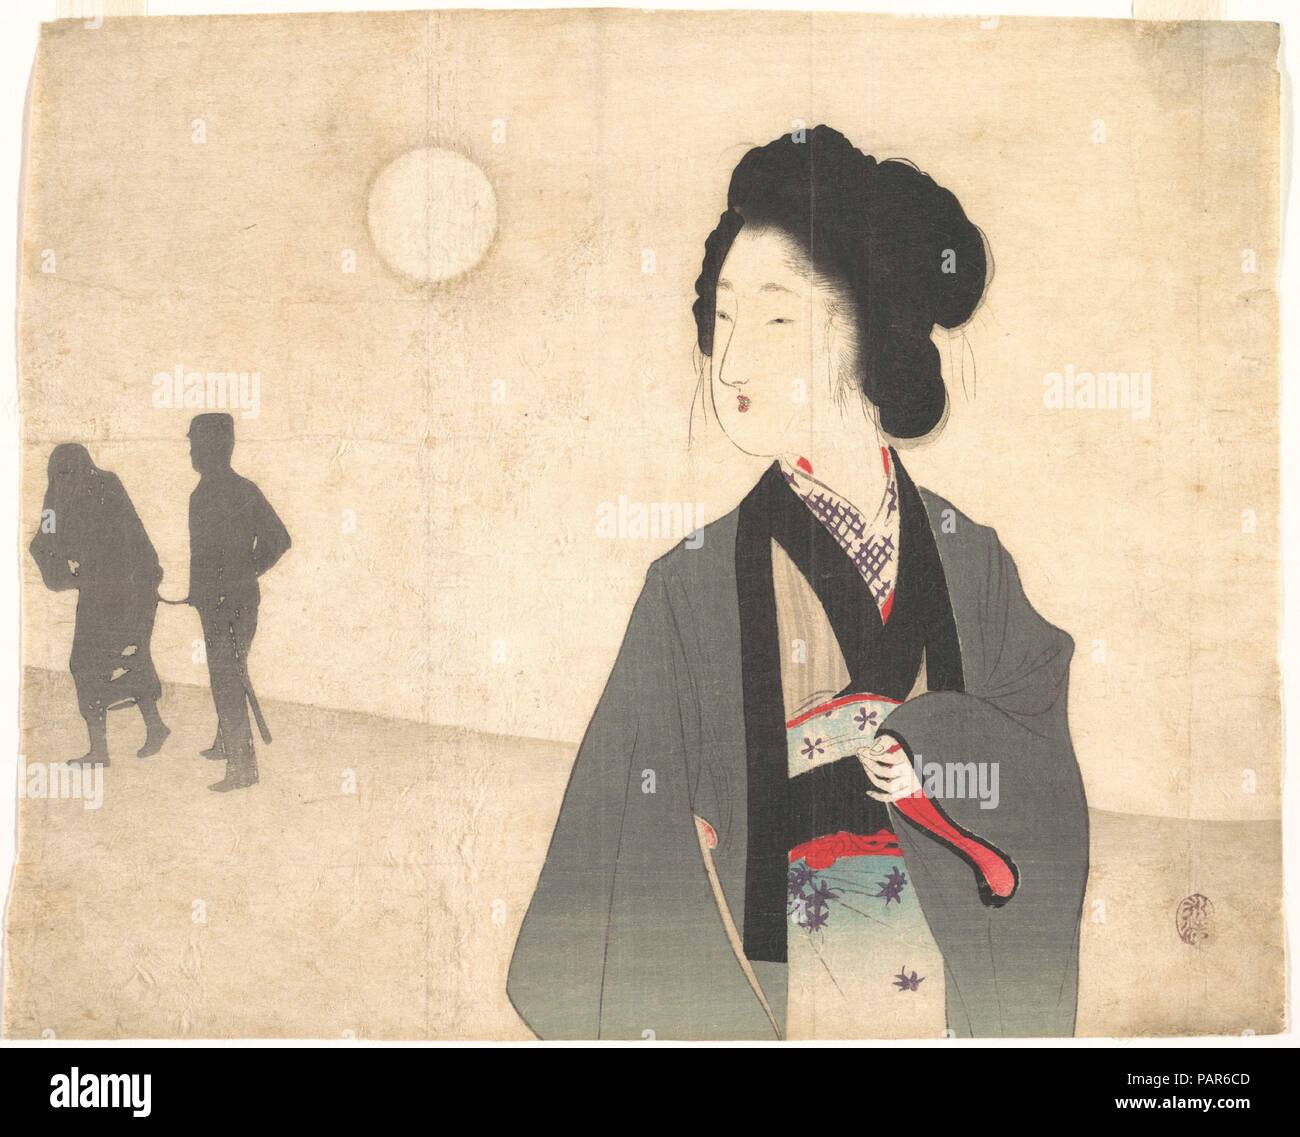 Giovane donna guarda la silhouette di un prigioniero maschio essendo portato lontano. Artista: Tomioka Eisen (giapponese, 1864-1905). Cultura: il Giappone. Dimensioni: 8 1/2 x 10 3/8 in. (21,6 x 26,4 cm). Data: agli inizi del XX secolo. Eisen's stampa visualizza il piuttosto patetico sentimento come illustrazione di un romanzo è tipica del tardo Meiji stampa. Una donna orologi i contorni del suo amante essendo portato lontano dalla polizia l'uomo. Le sagome senza motivi di sfondo suggeriscono un luogo irraggiungibile dalla donna nella realtà. Museo: Metropolitan Museum of Art di New York, Stati Uniti d'America. Foto Stock